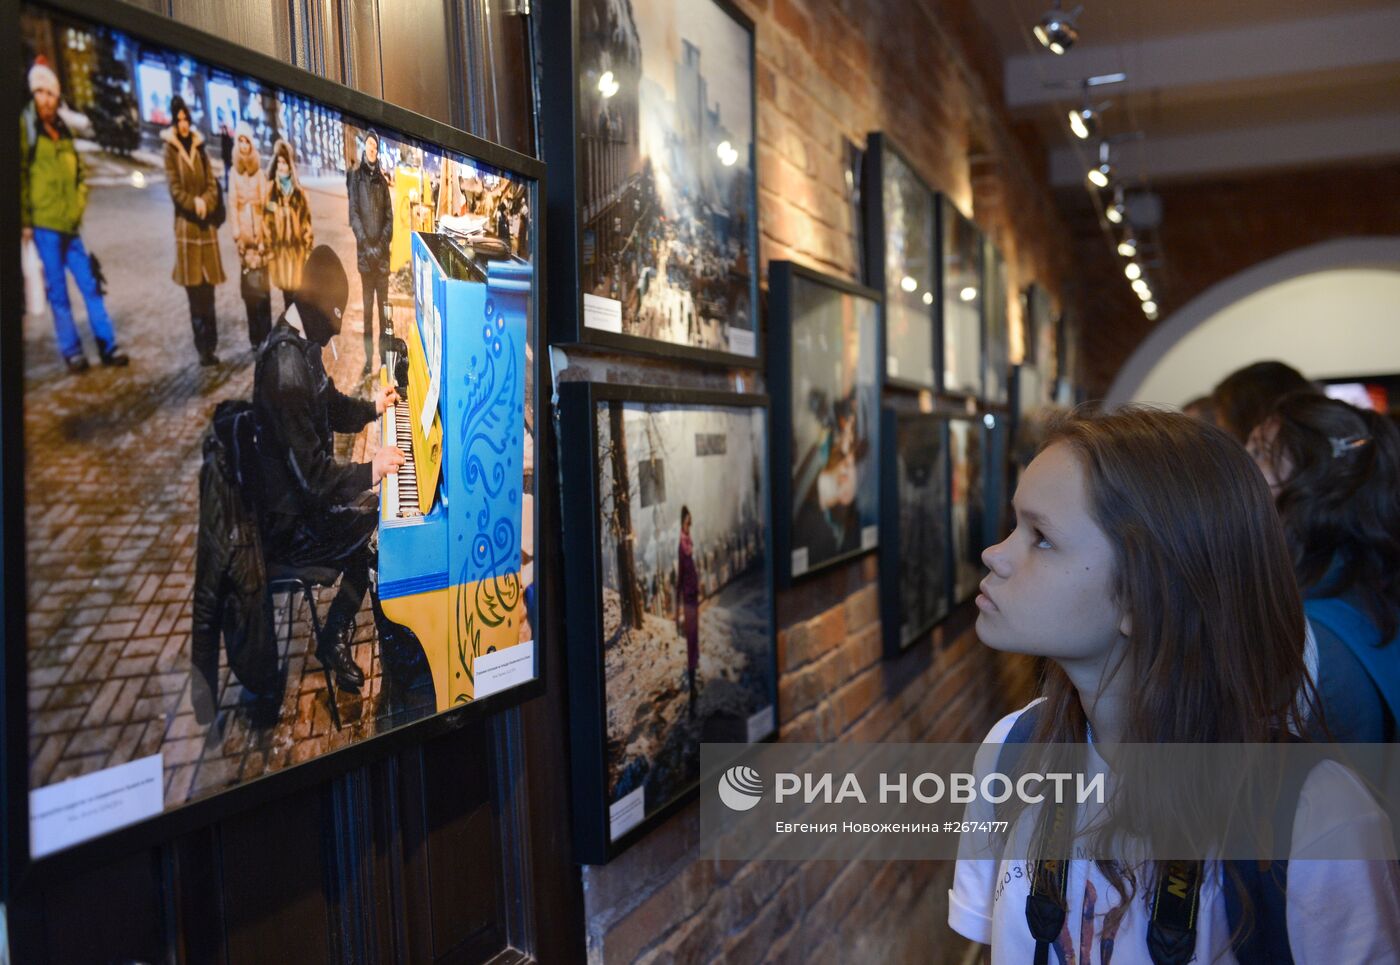 Открытие выставки фотокорреспондента МИА "Россия сегодня" Андрея Стенина